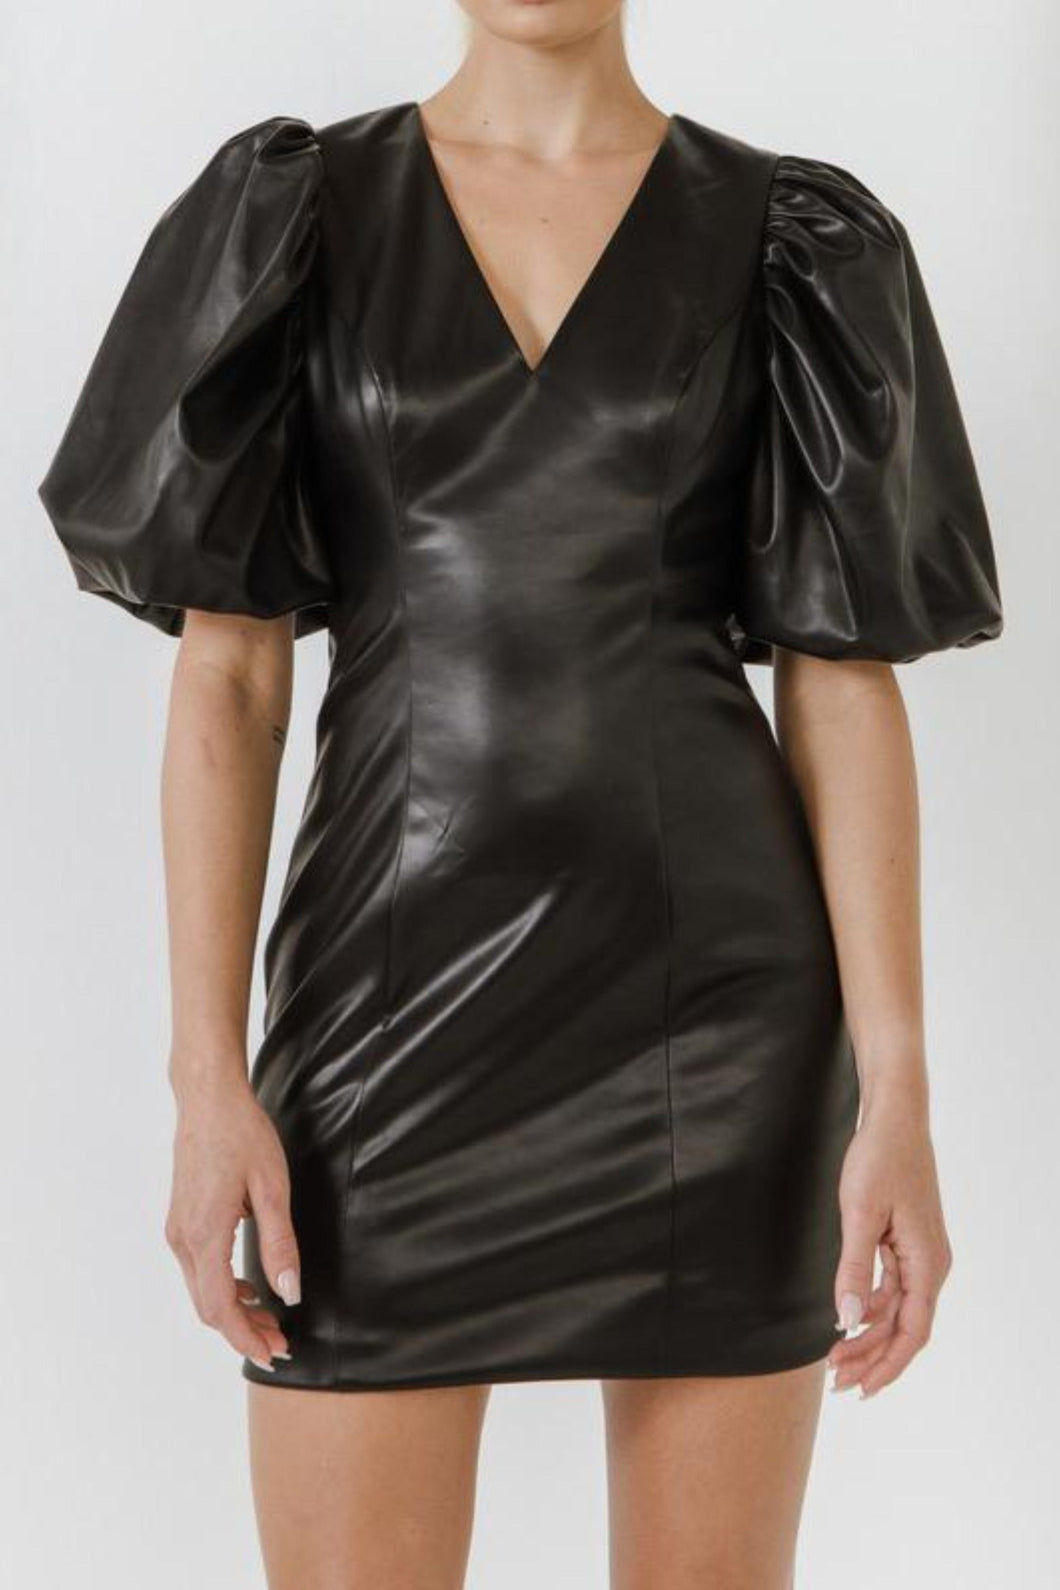 Sarah Faux Leather Dress Dresses Seven 1 Seven XS Black 